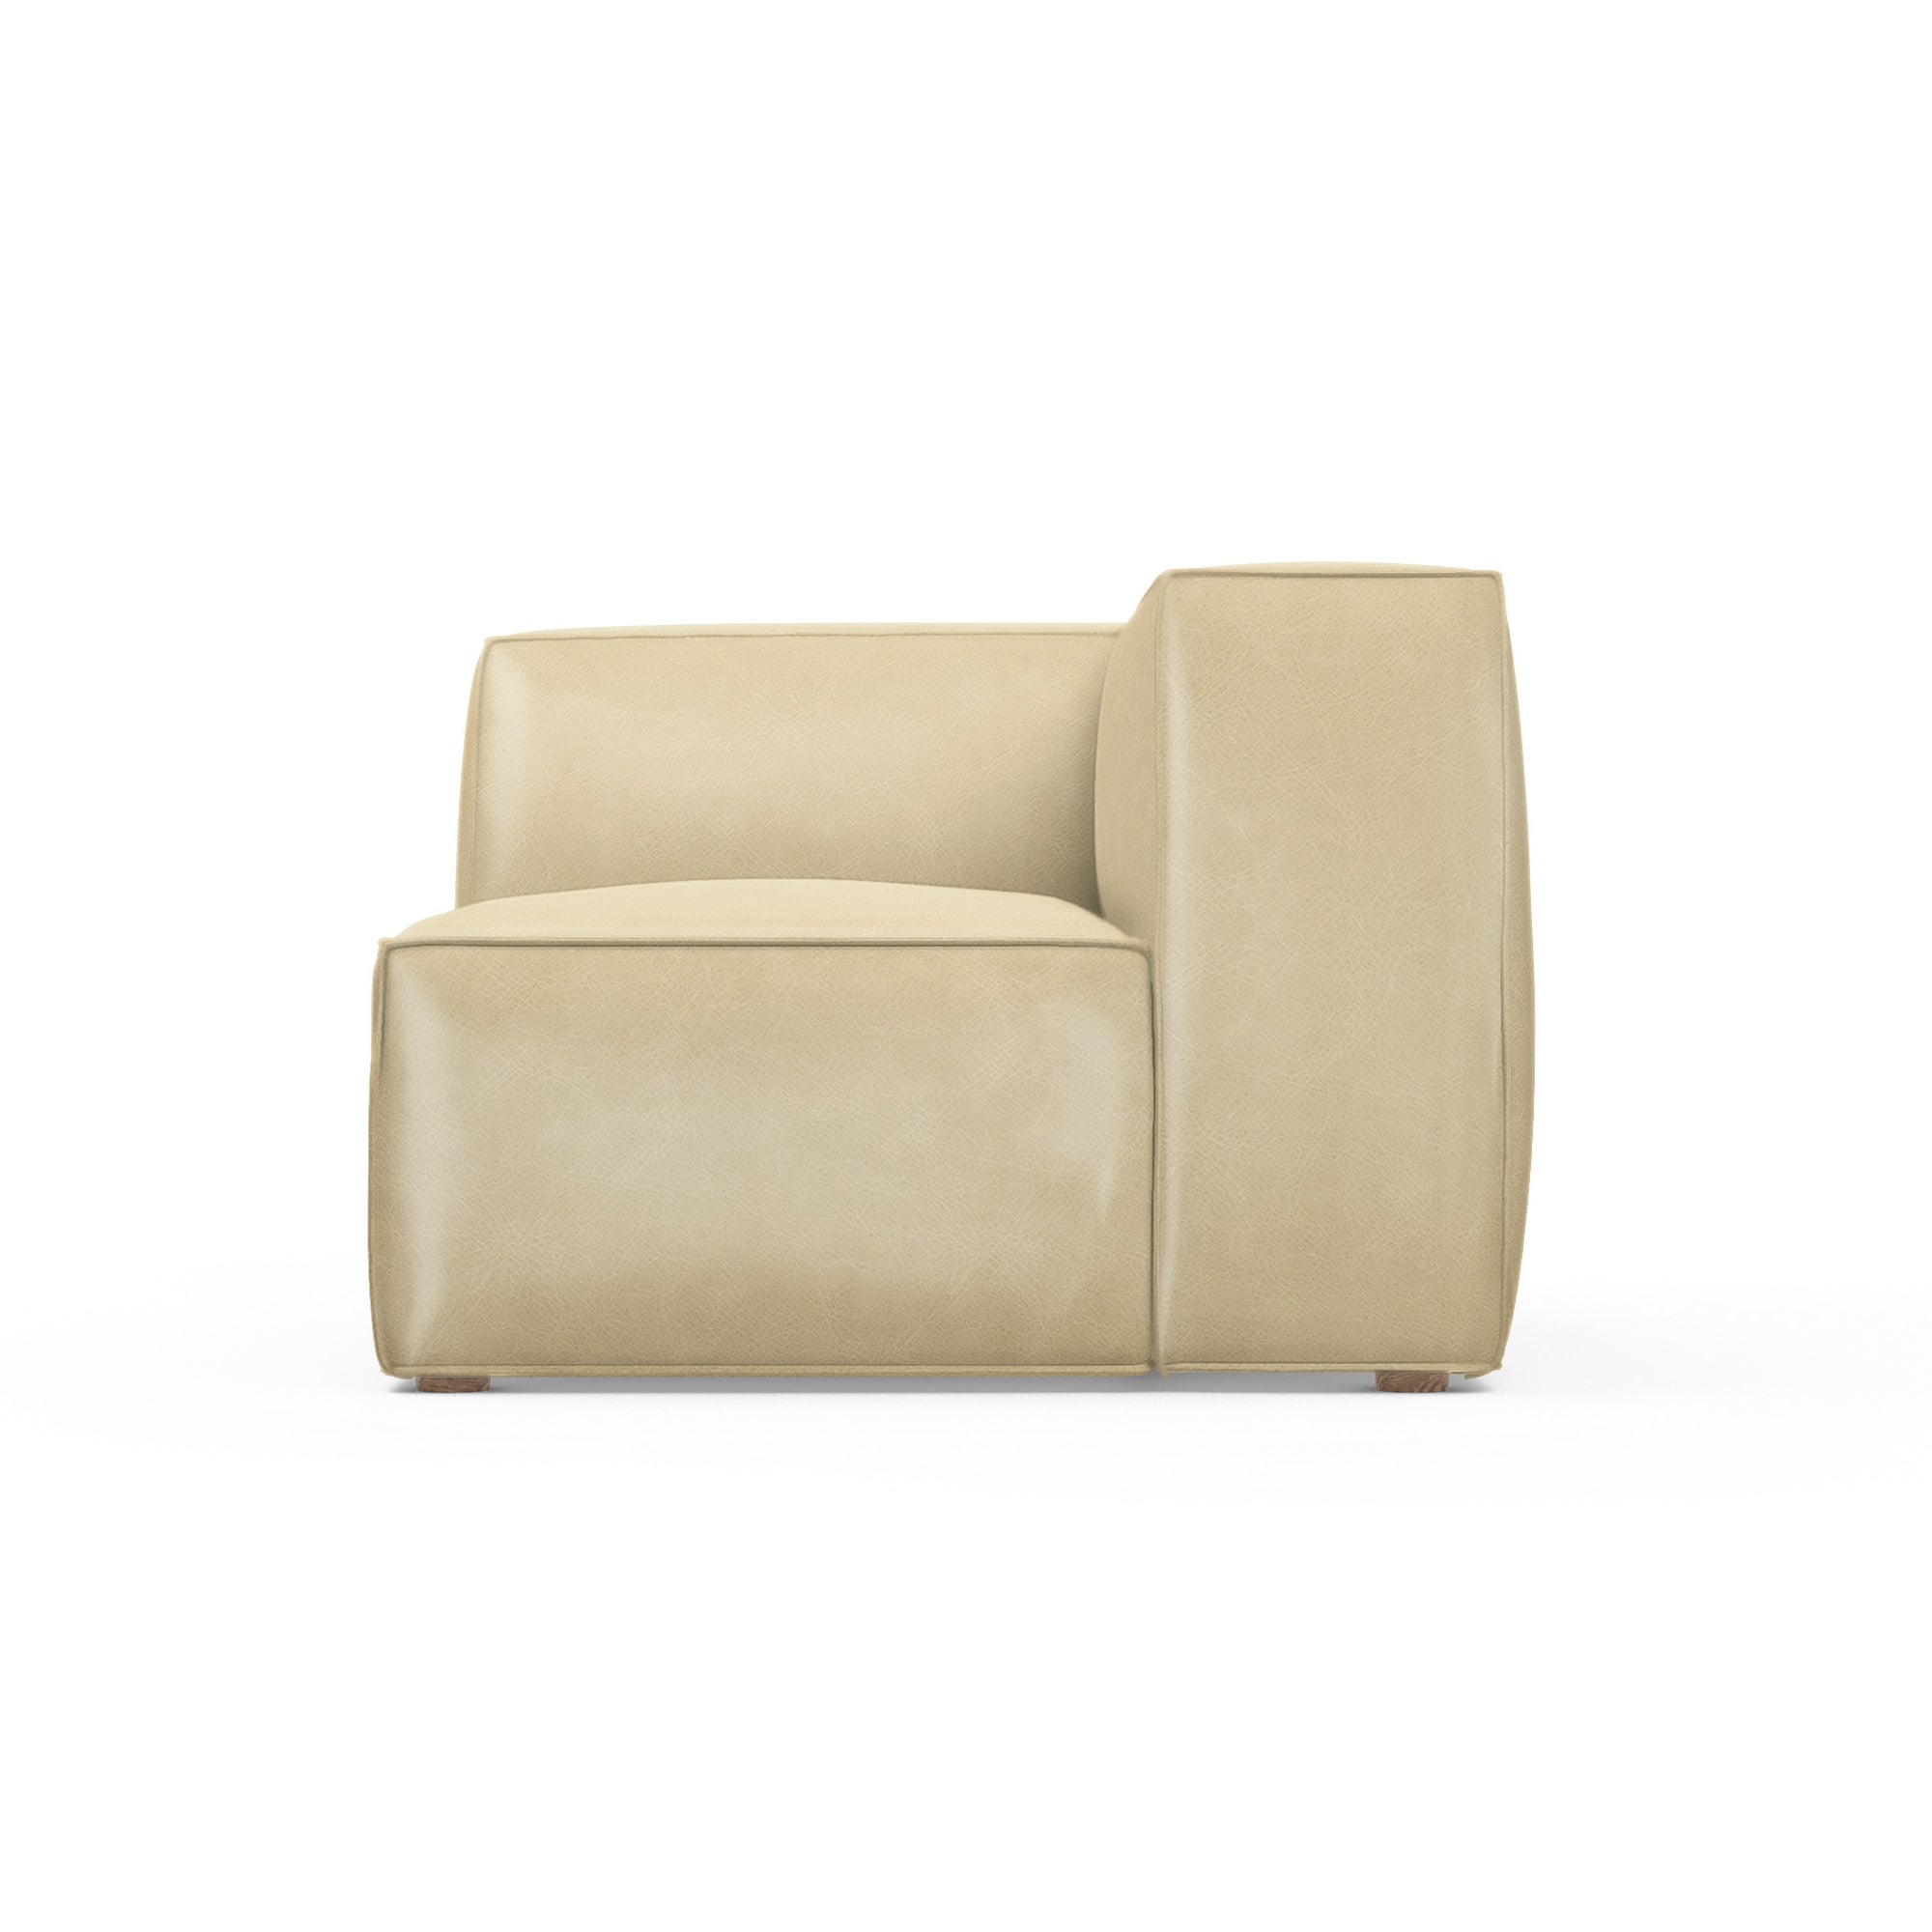 Varick Corner Chair - Oyster Vintage Leather